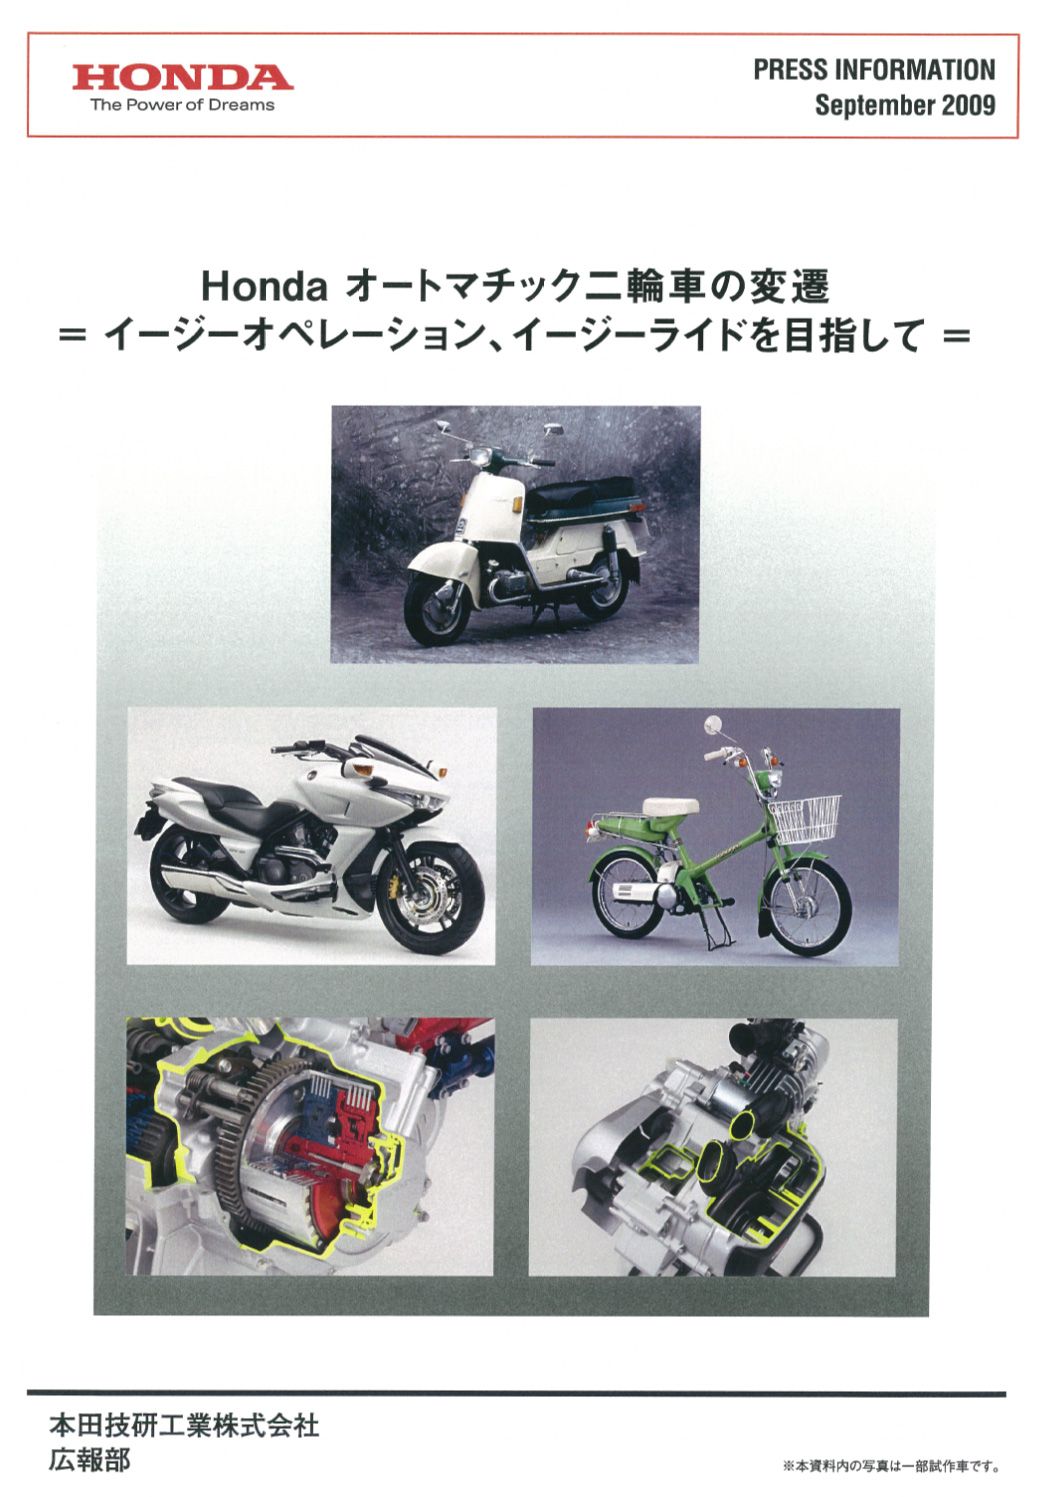 Honda オートマチック二輪車の変遷 イージーオペレーション、イージーライドを目指して